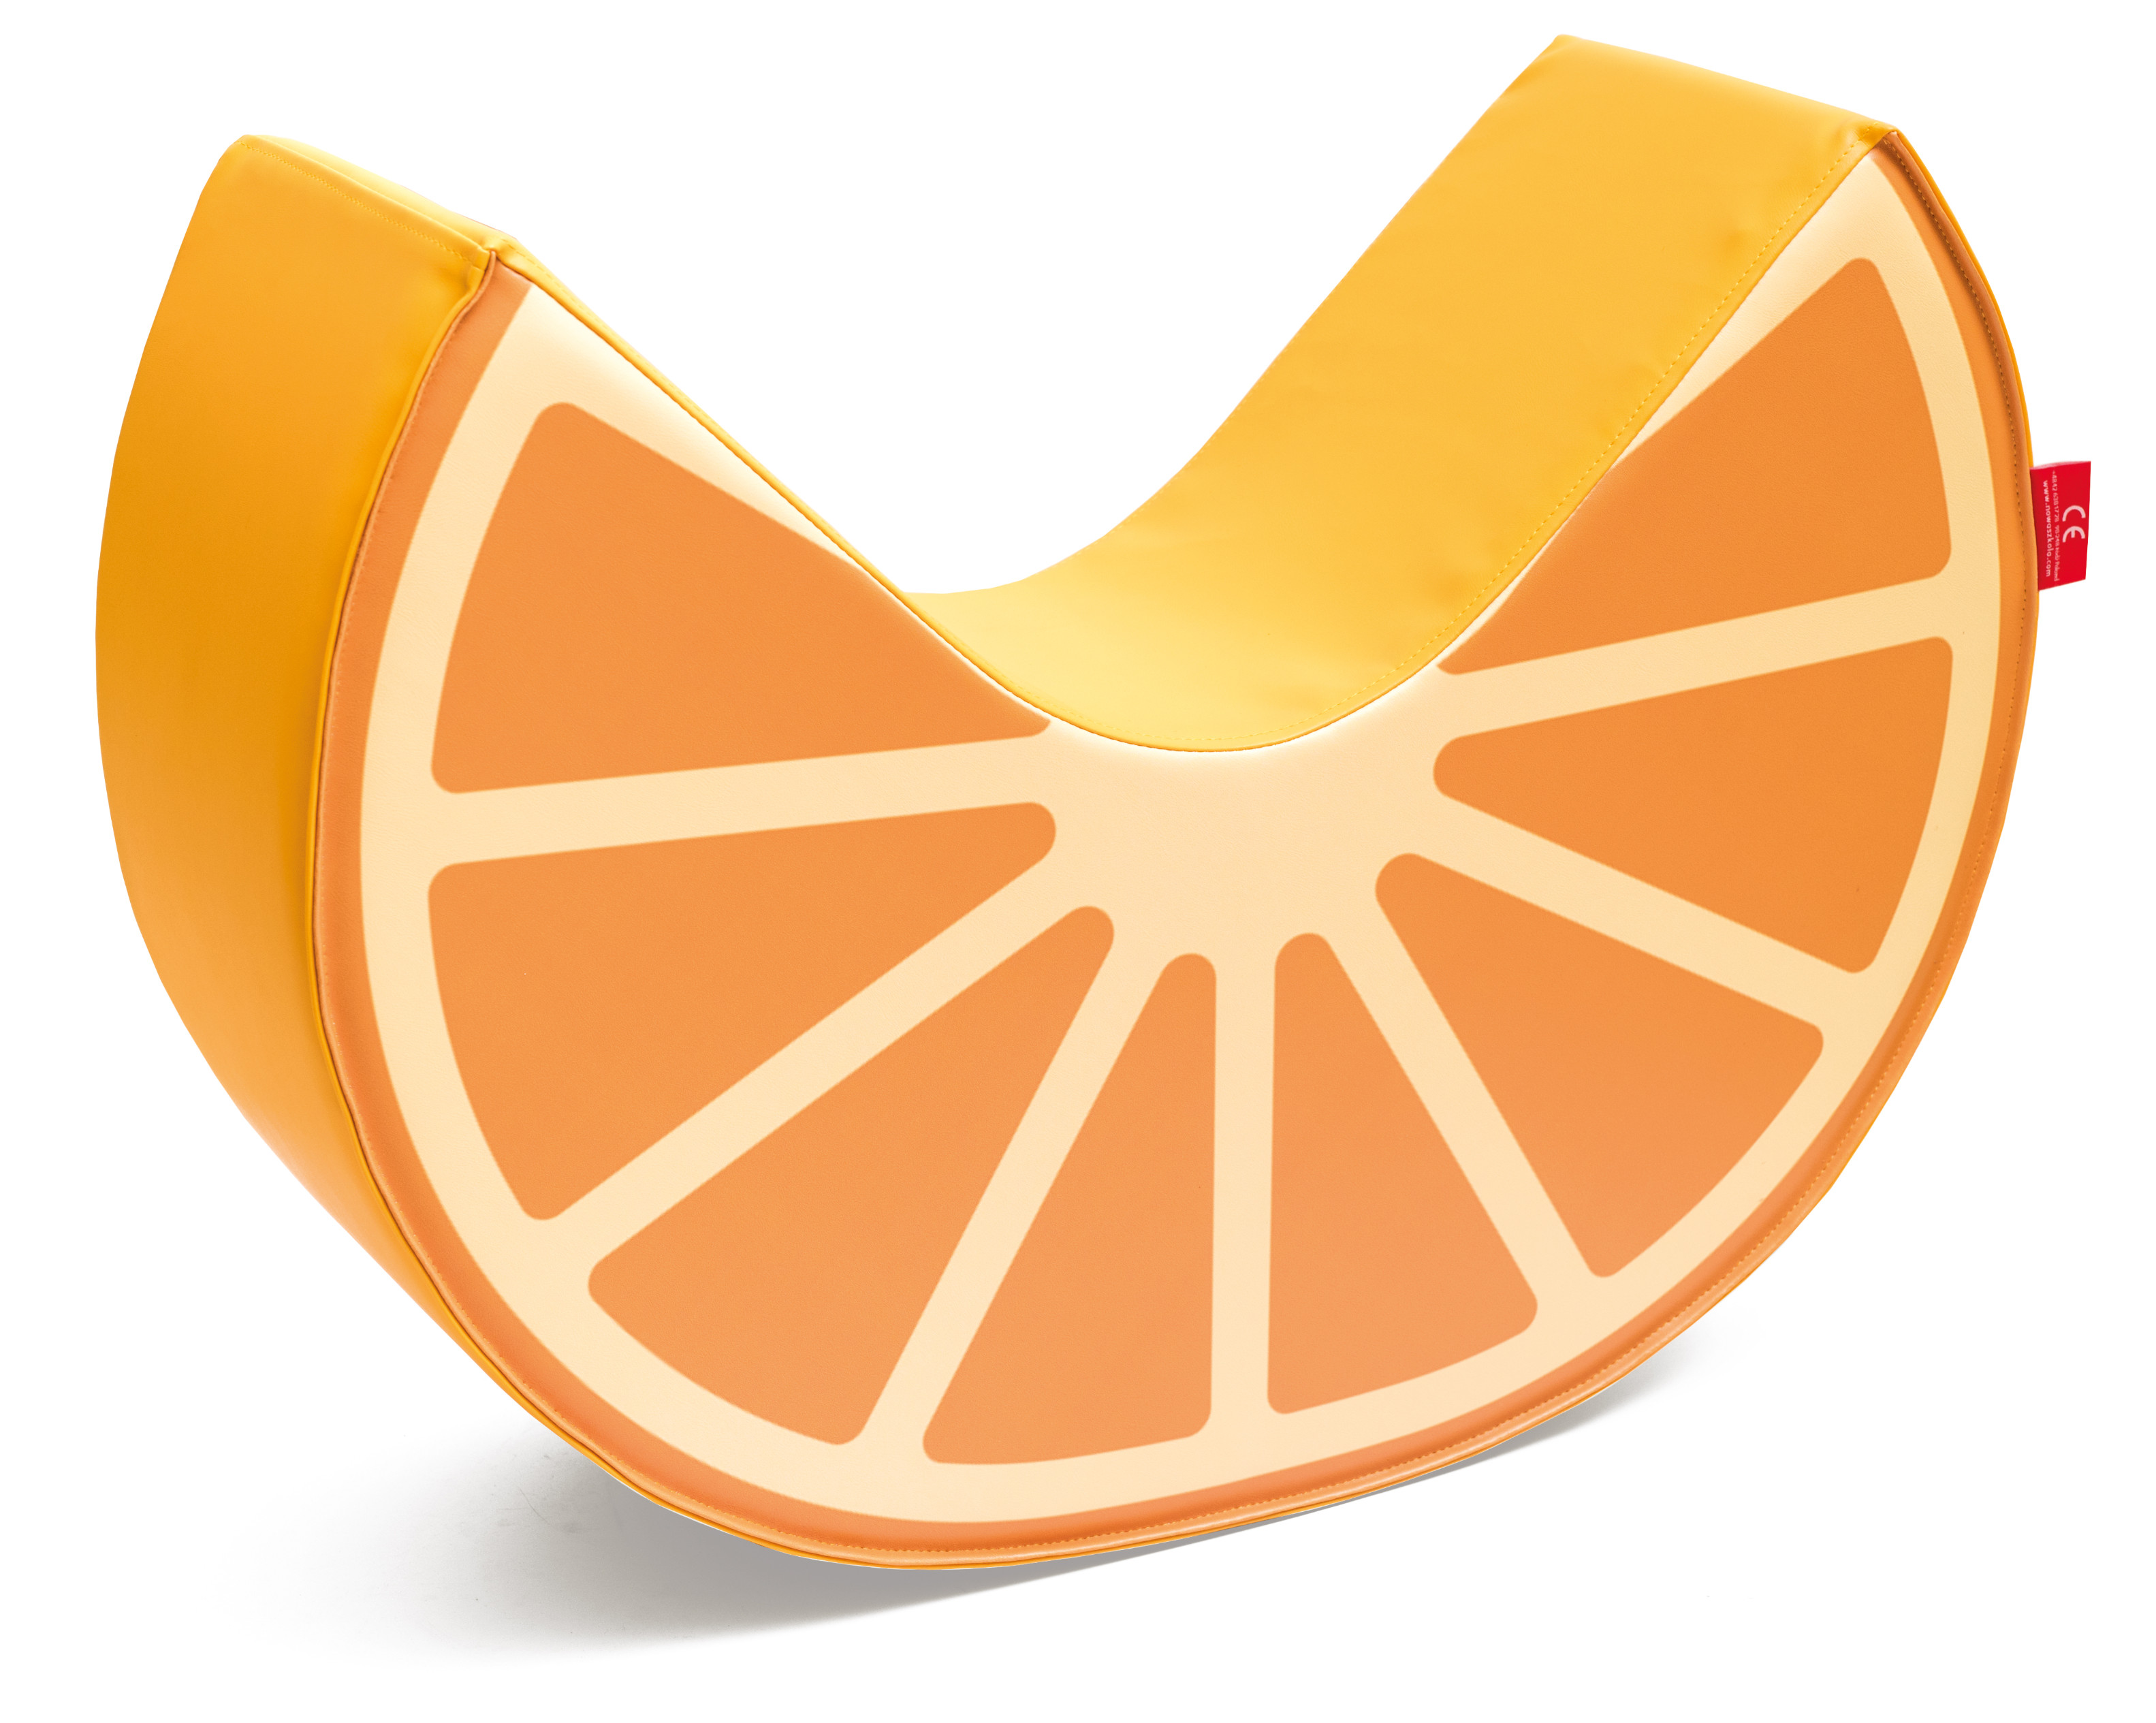 Siūbuoklis “Apelsinas”